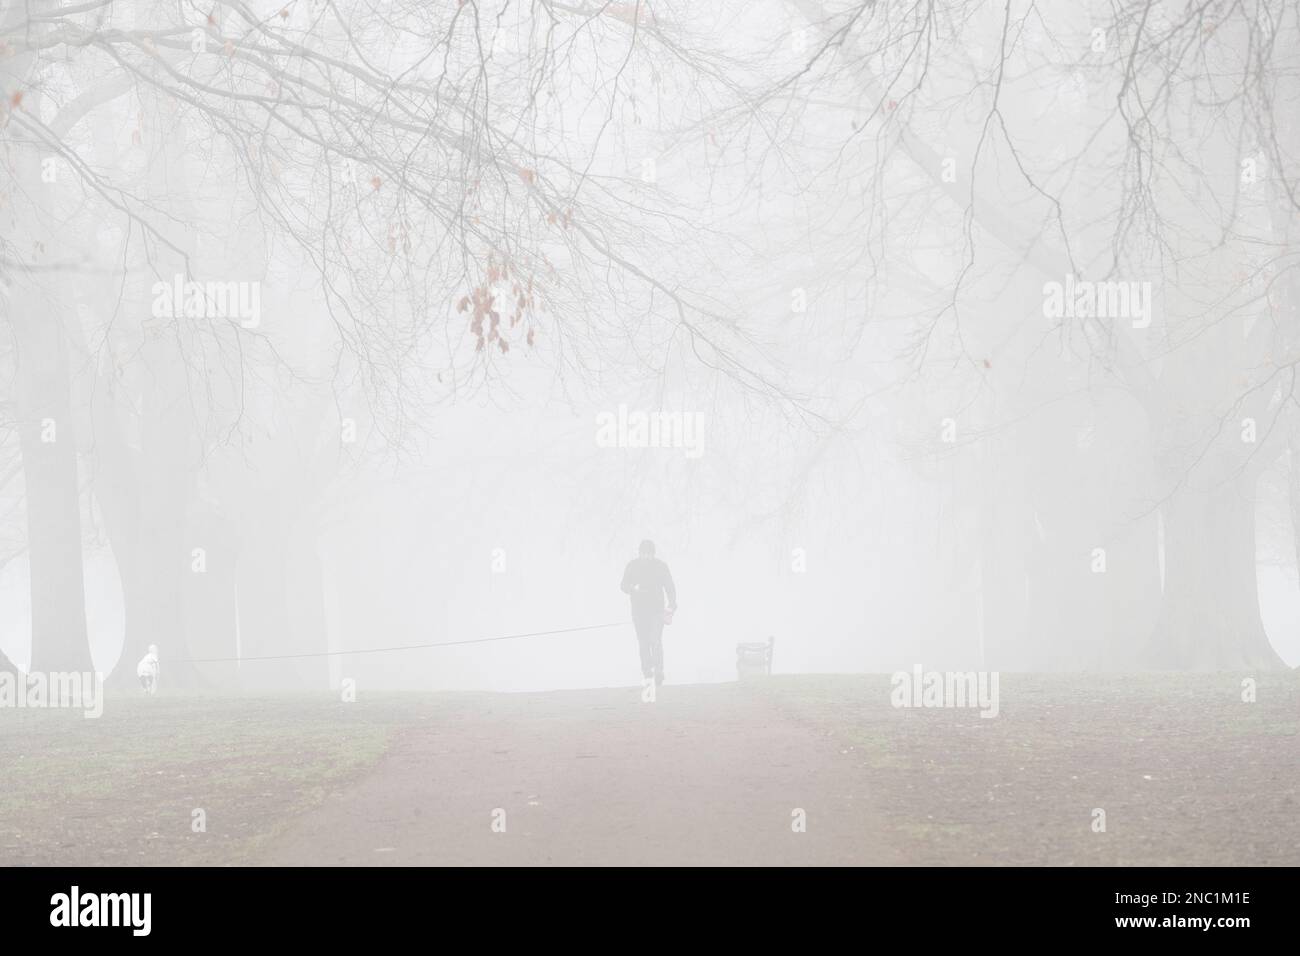 Northampton, Großbritannien. Wetter. Starker Nebel im Abington Park hielt die Leute nicht davon ab, morgens Sport zu treiben. Northamptonshire, England. Stockfoto